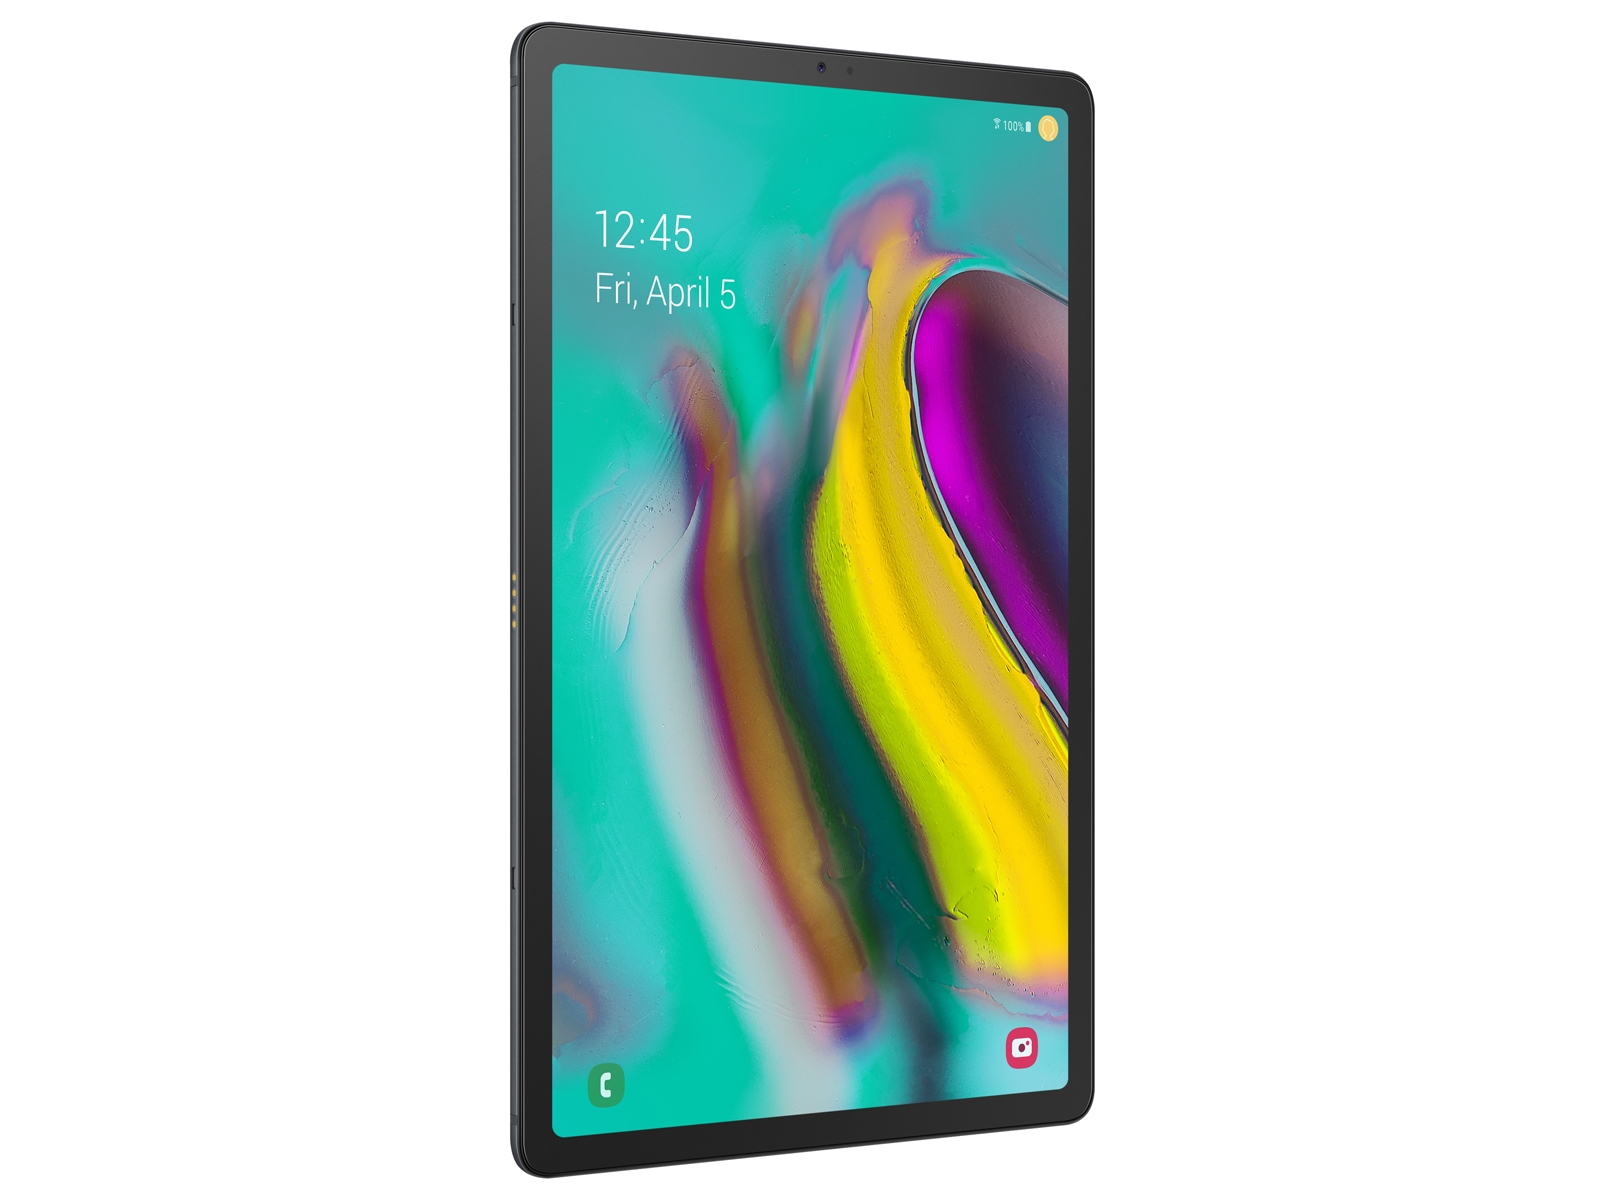 Galaxy Tab S5e 10.5, 64GB, Black (Wi-Fi) Tablets - SM-T720NZKAXAR ...